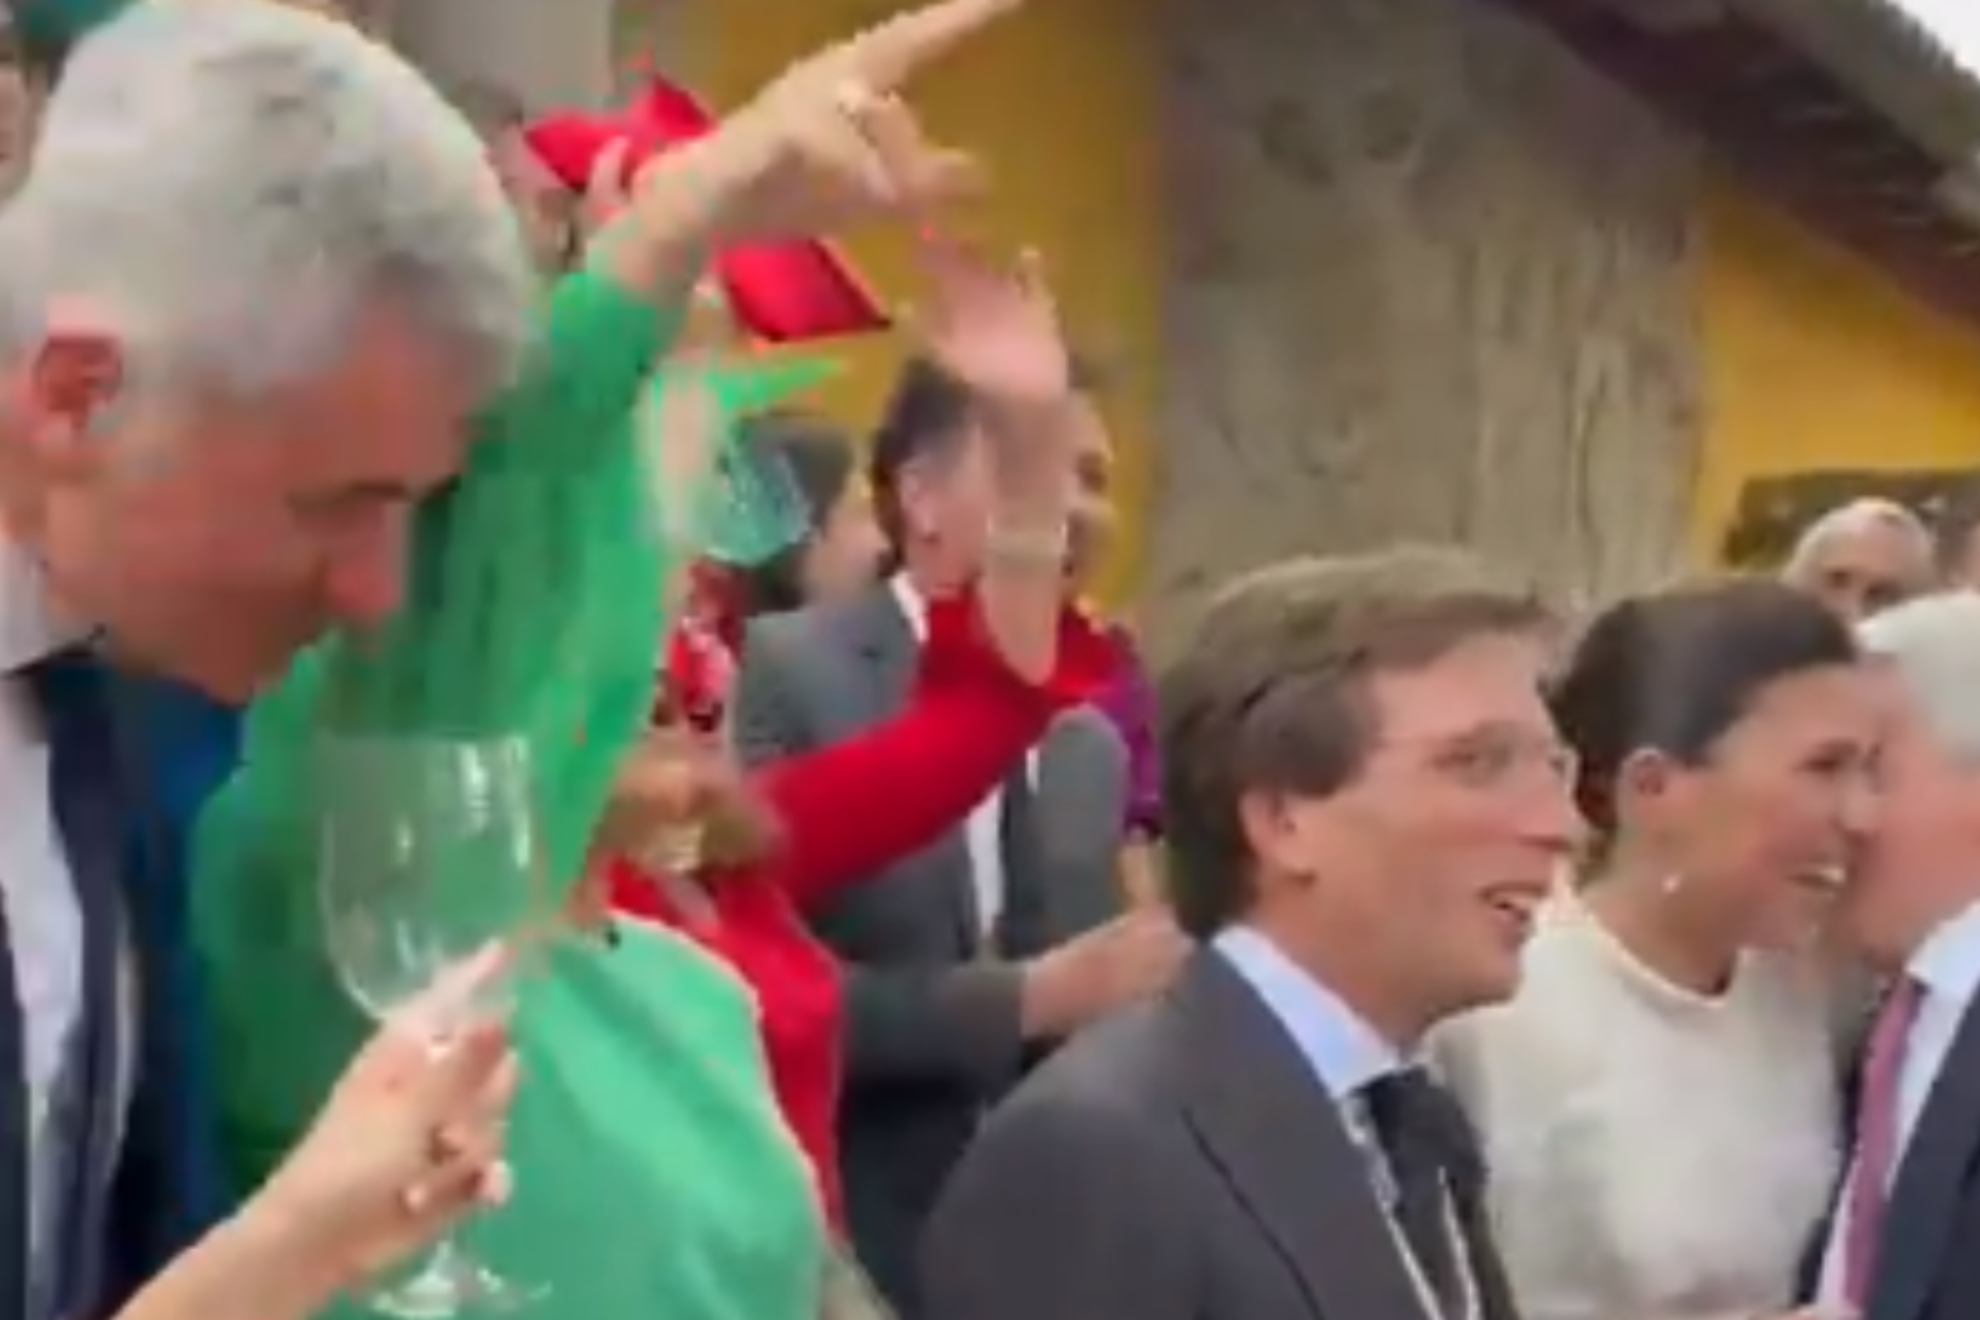 La boda de Almeida y el momentazo cantando el himno del Atl�tico con Simeone, Cerezo y Gil Mar�n: Atleti...